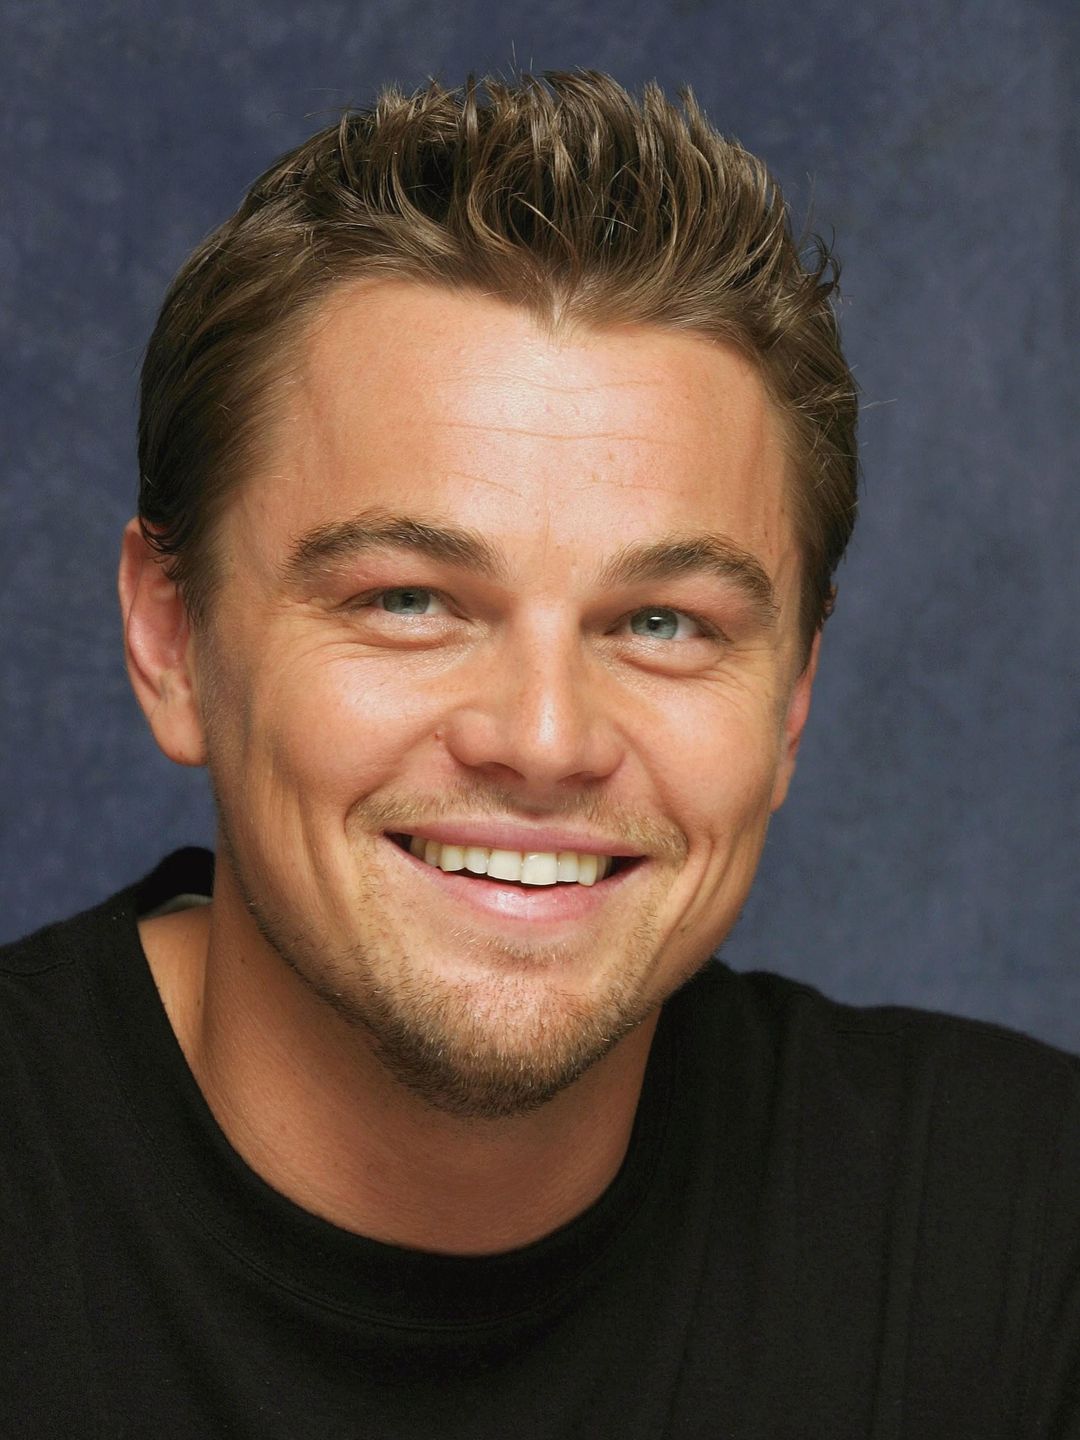 Leonardo DiCaprio early career